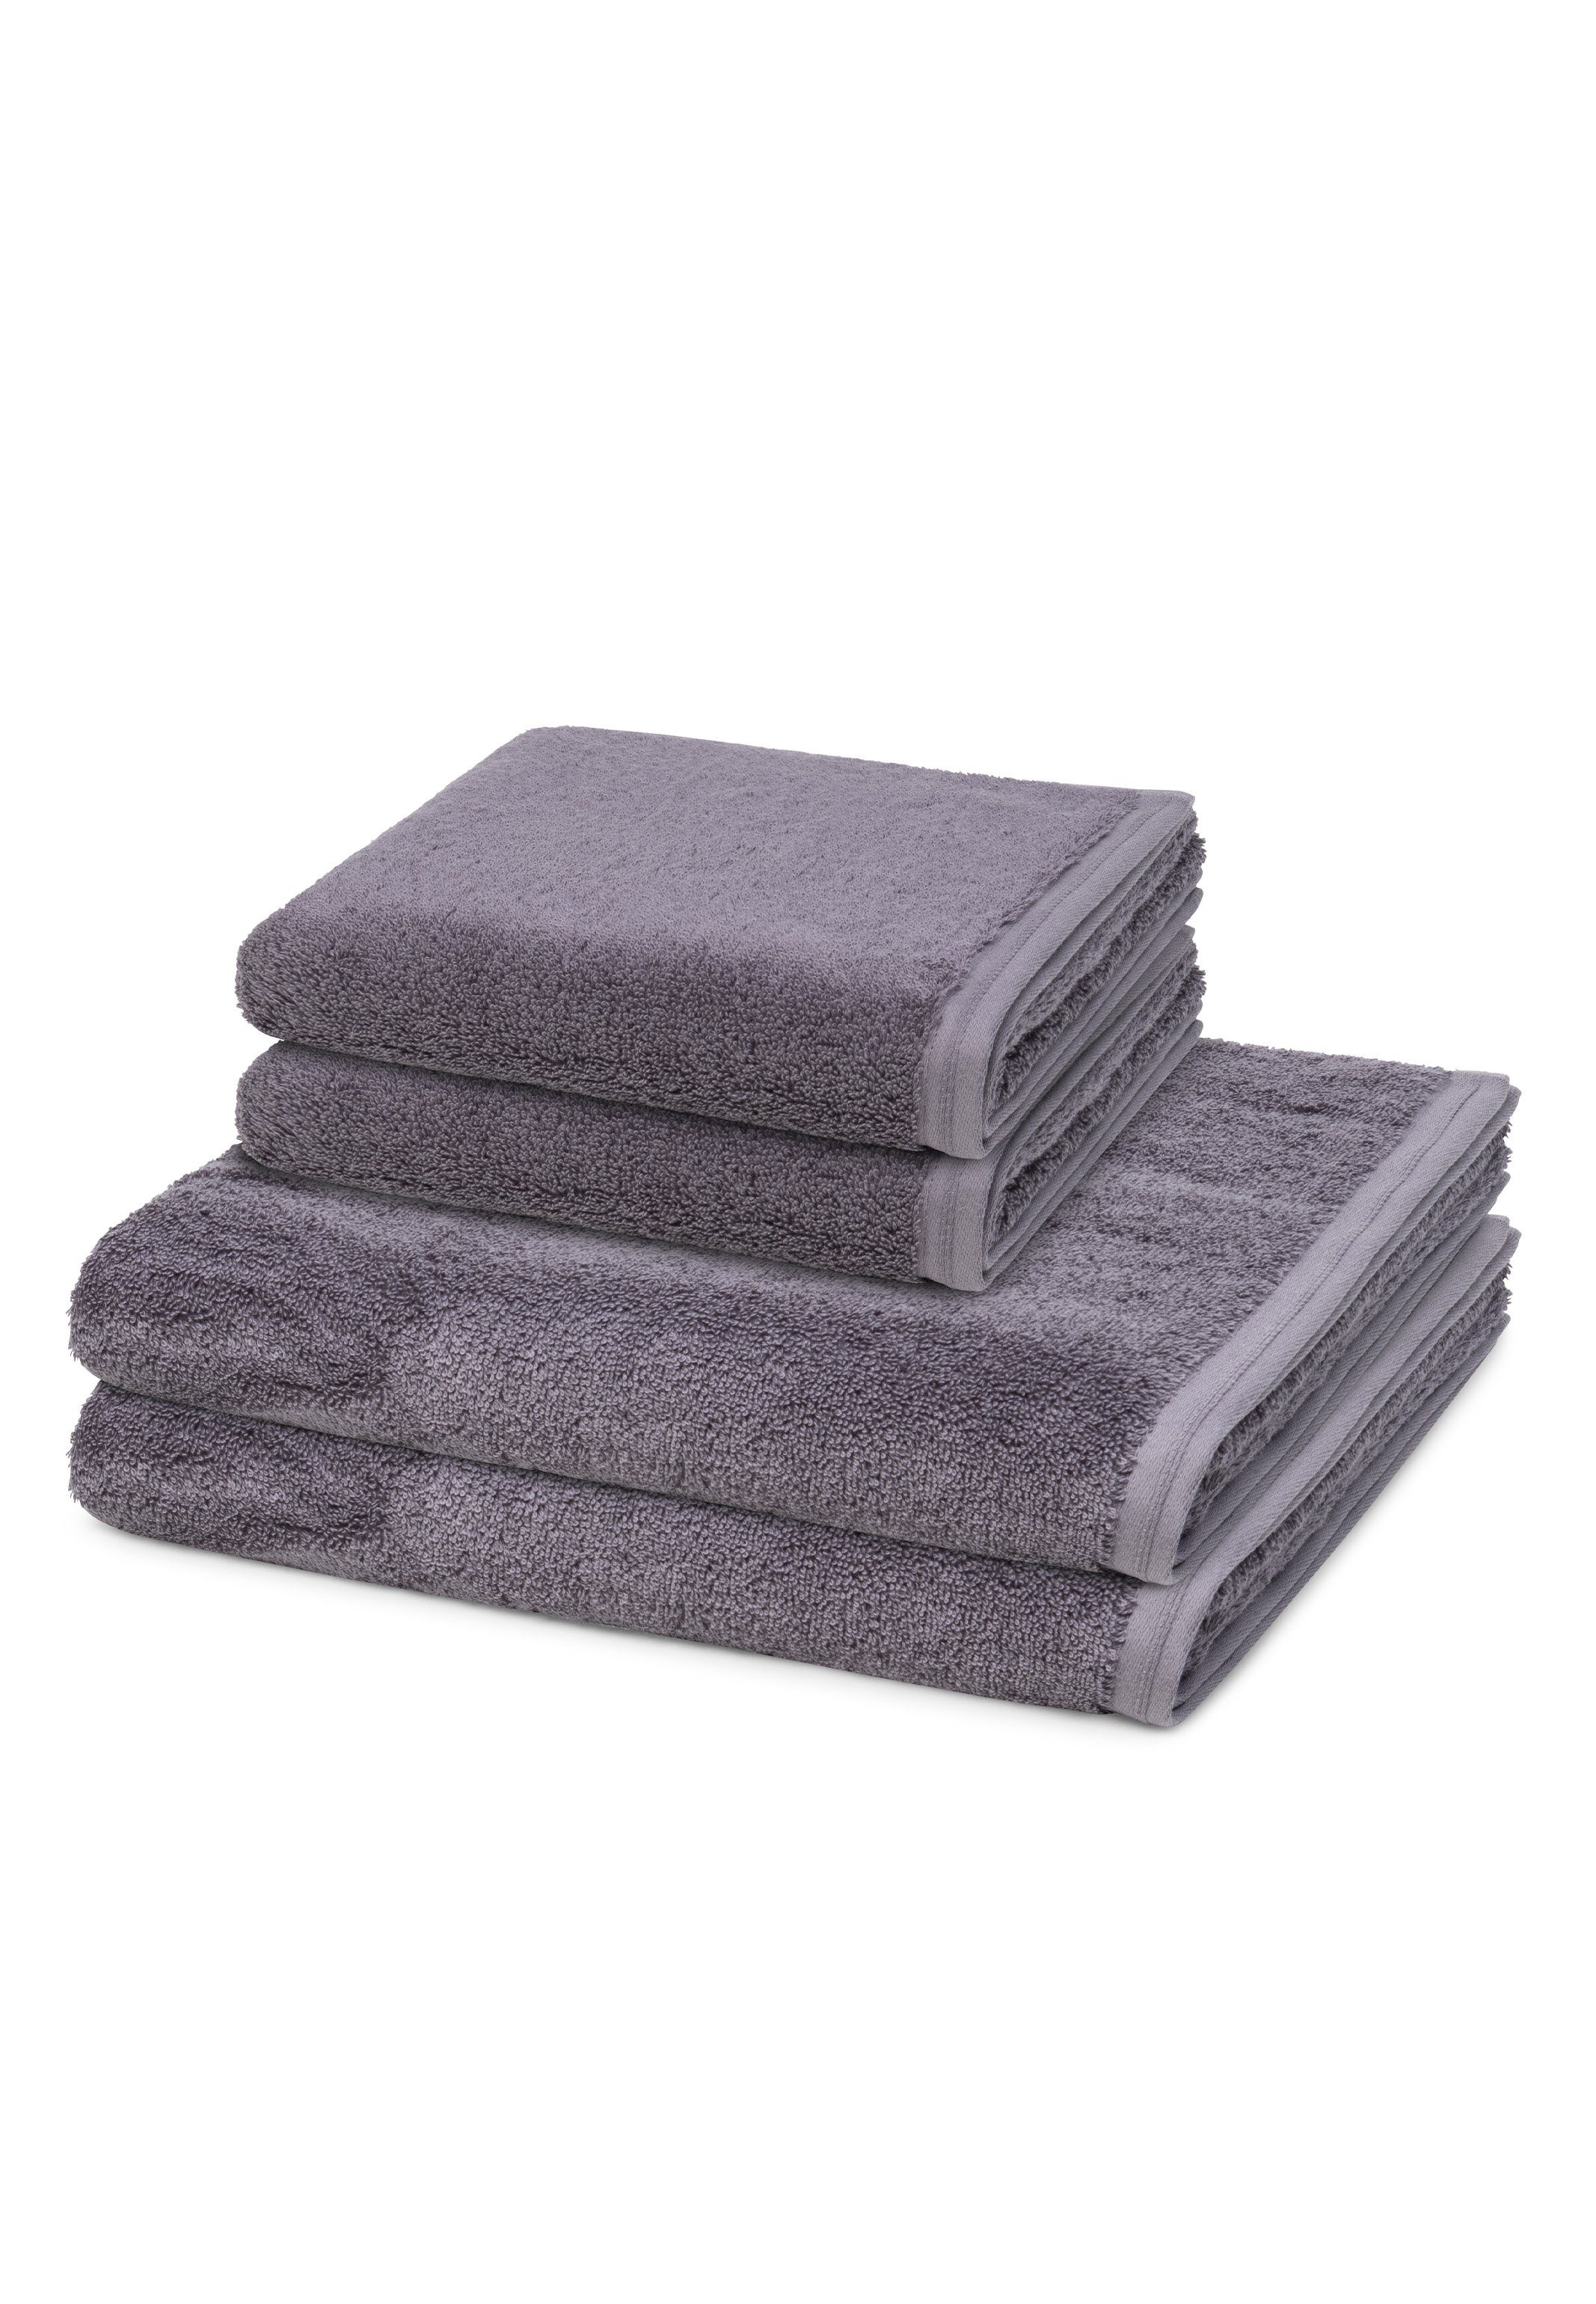 Vossen Handtuch-Sets online kaufen | OTTO